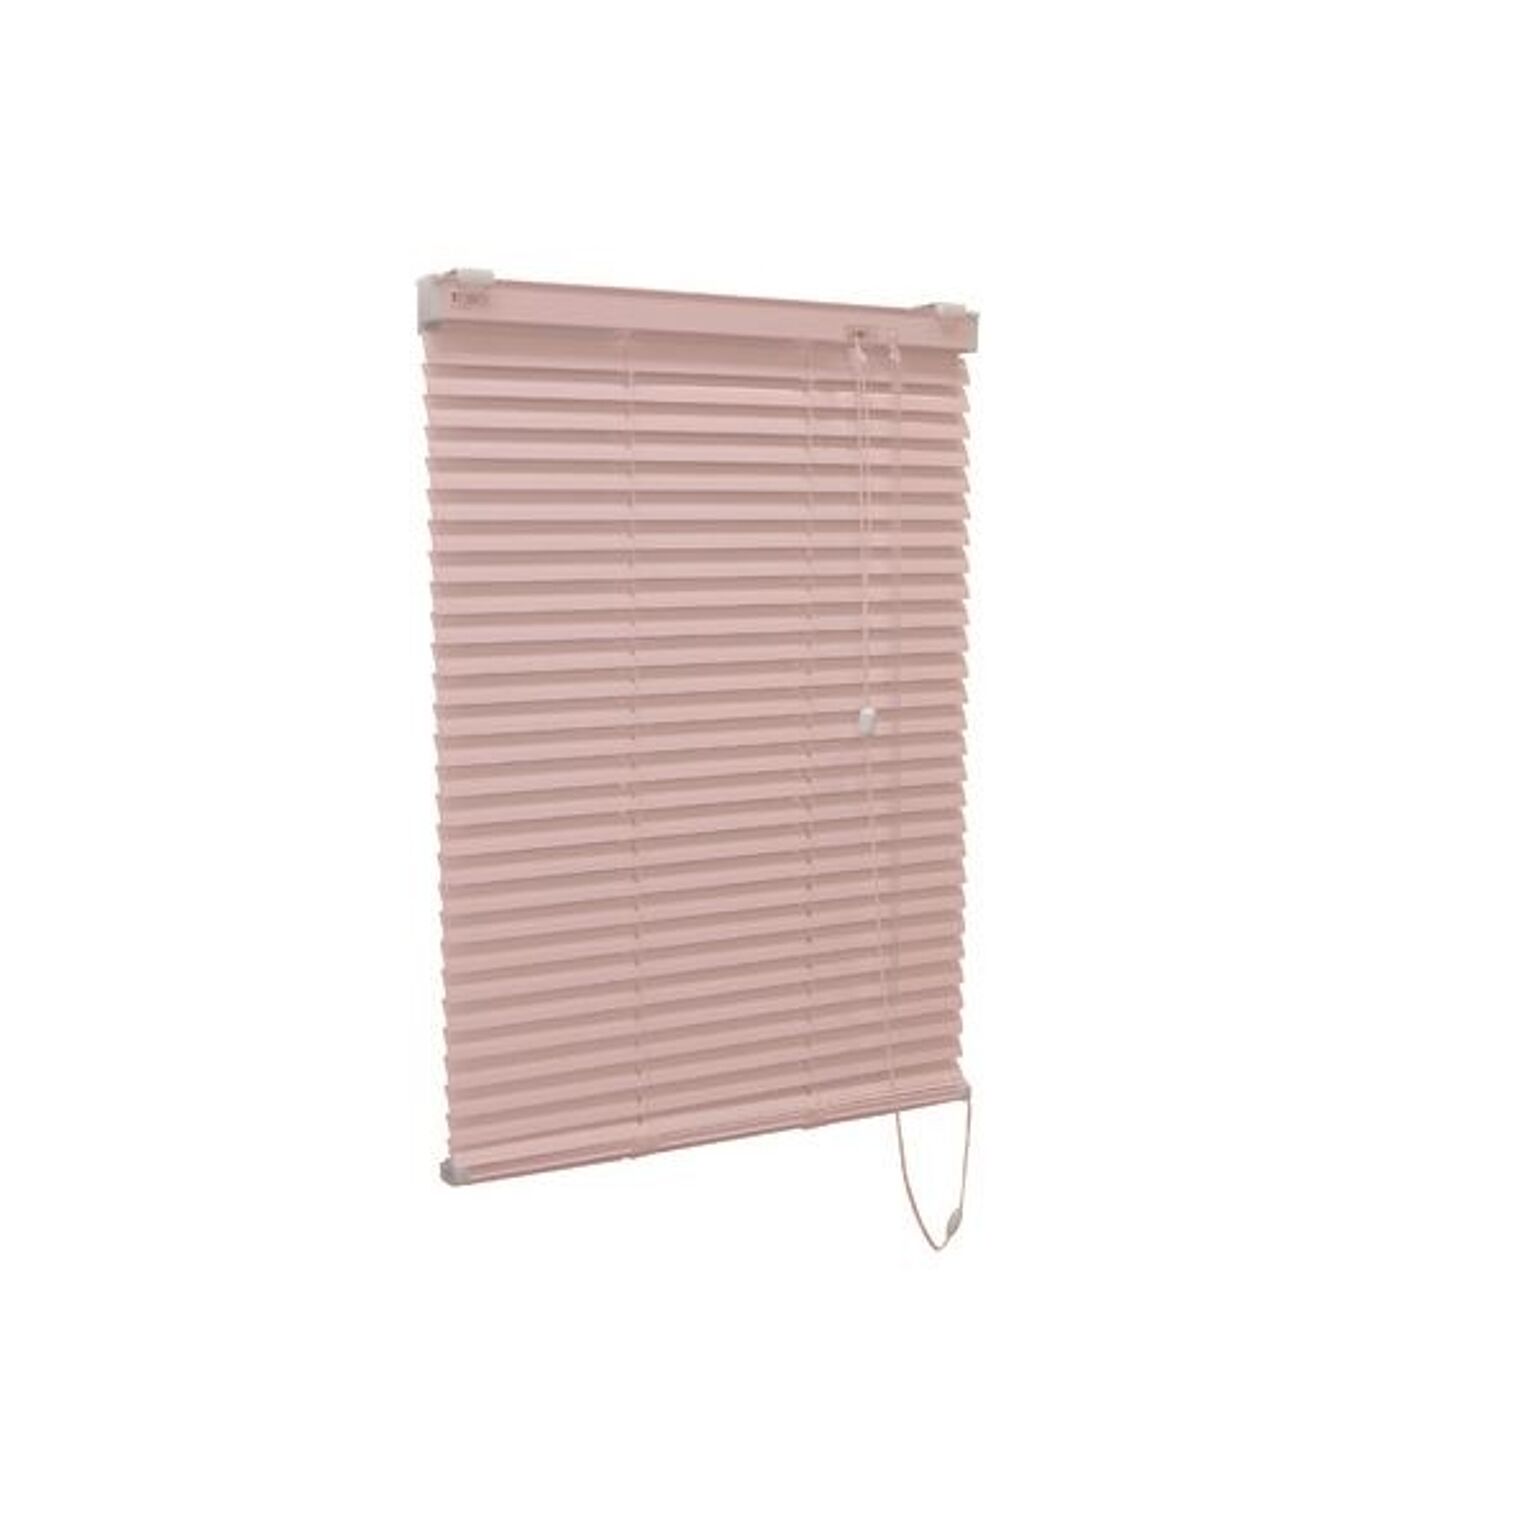 アルミ製 ブラインド 【165cm×210cm ピンク】 日本製 折れにくい 光量調節 熱効率向上 『ティオリオ』【代引不可】